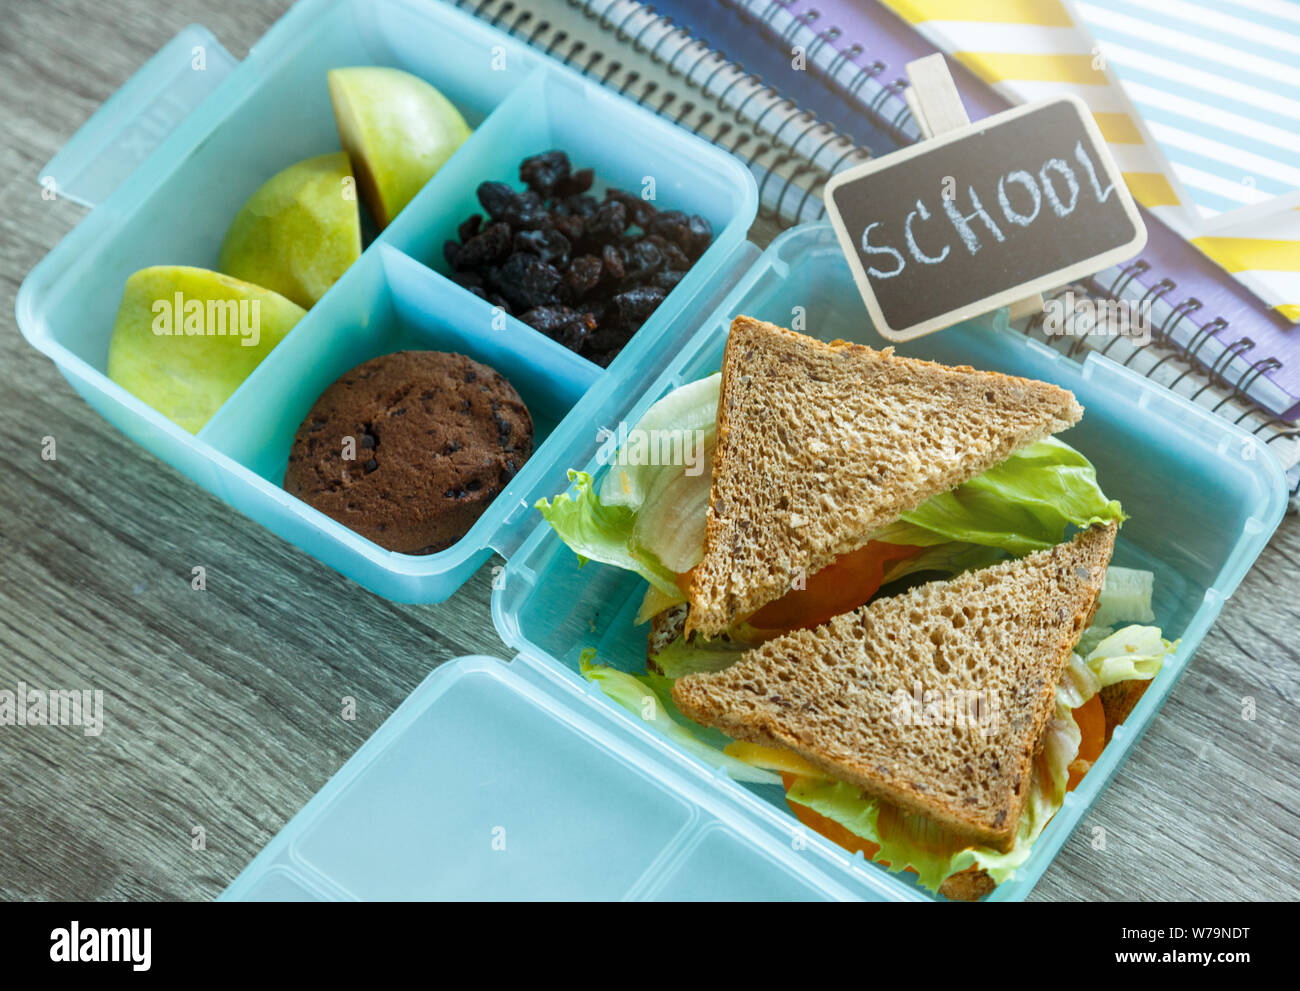 School lunch box bleu composé de sandwich, pomme verte, cookies, crayons, horloge, ordinateurs portables sur la table. Une saine alimentation à l'école. Retour à l'école Banque D'Images